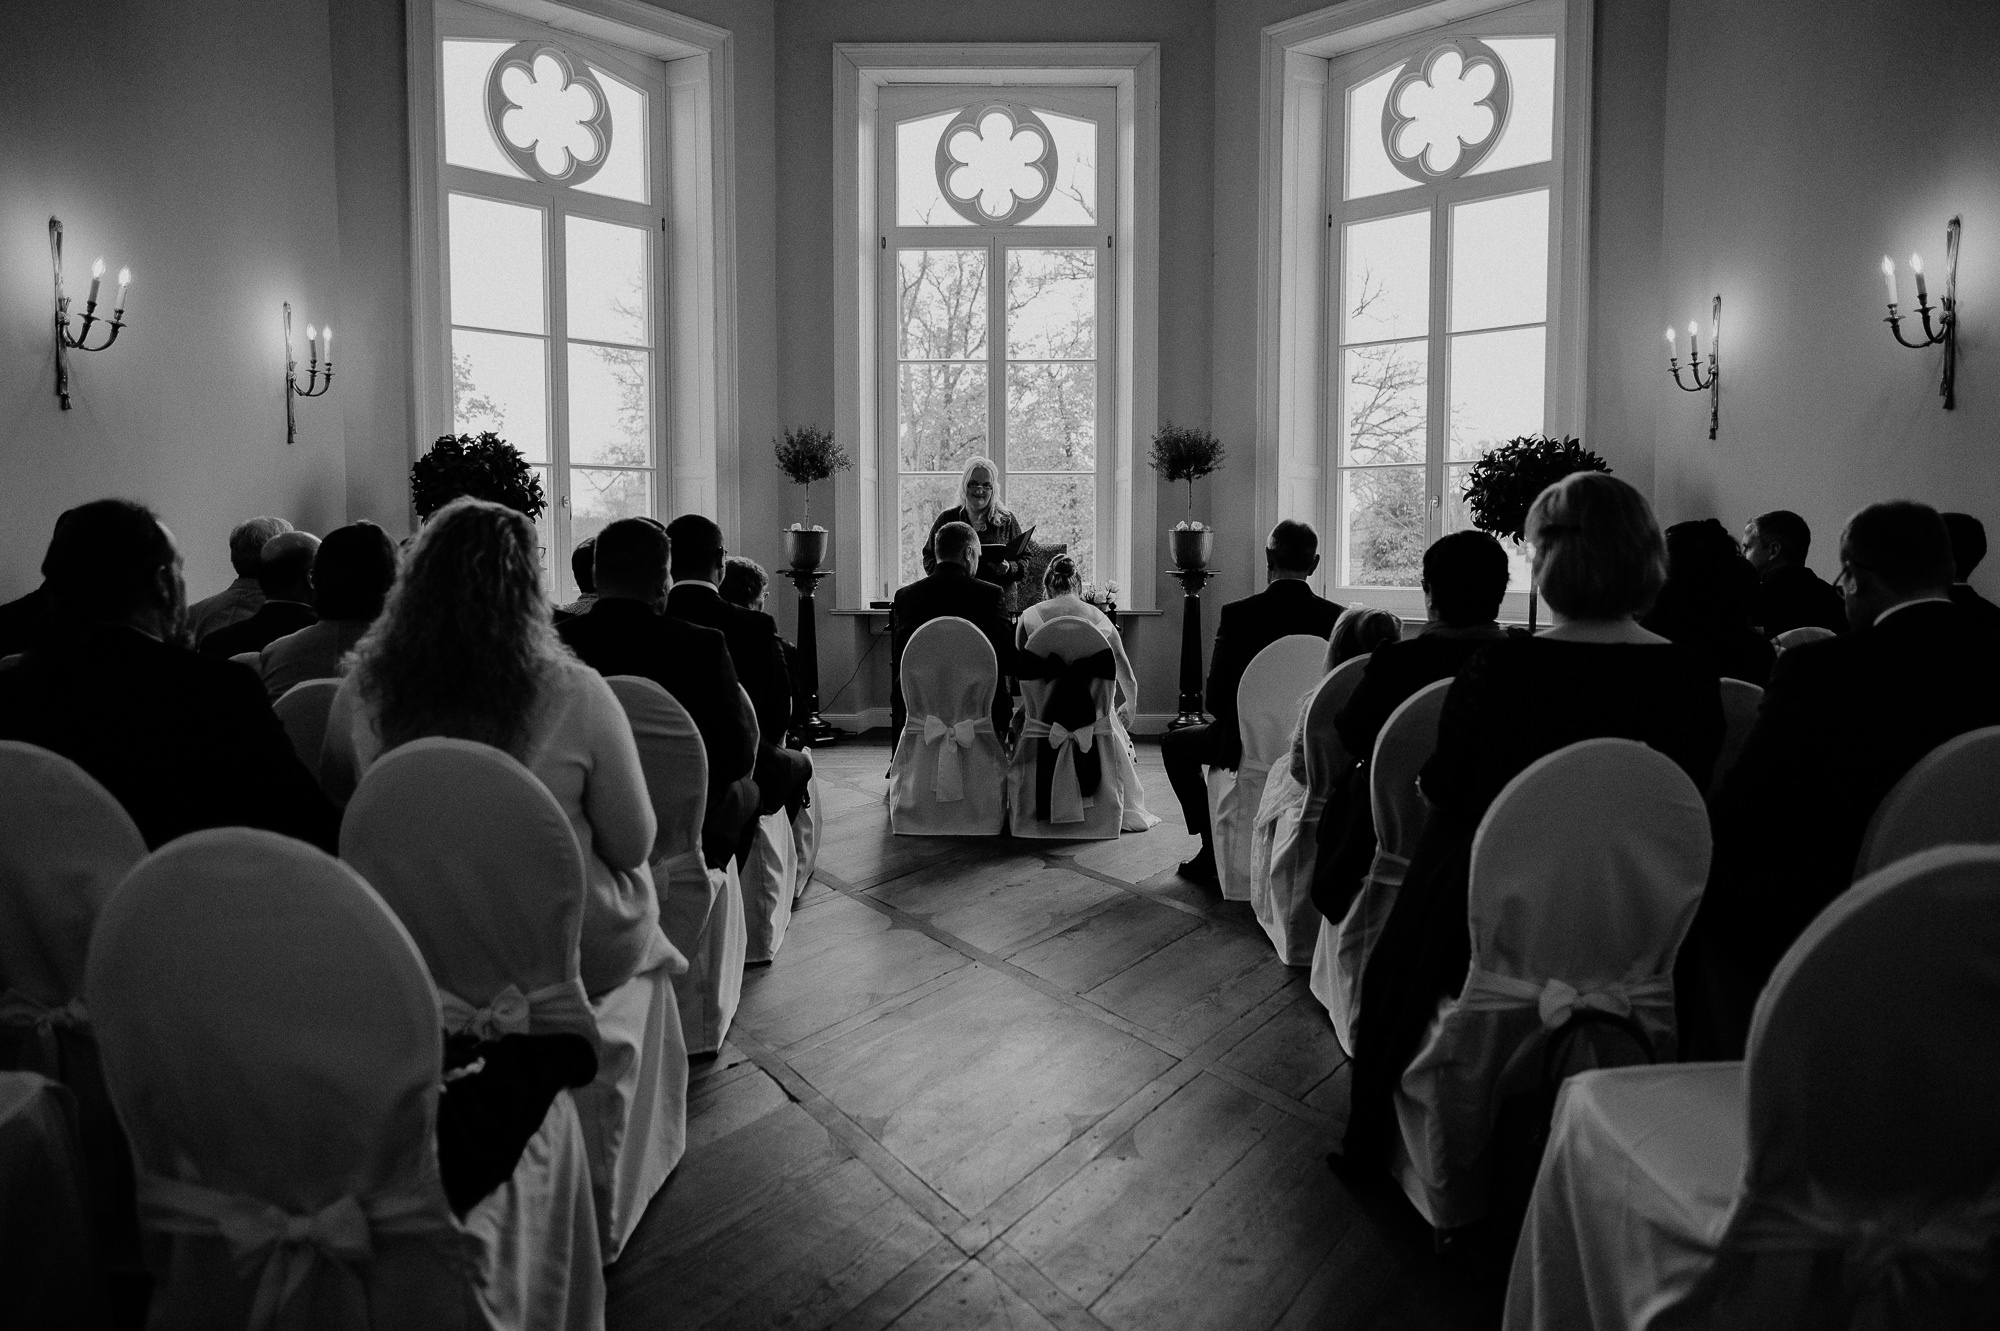 Hochzeitsfotograf-Schloss-Schlemmin-Heiraten-Gut-Ulrichshusen-Rostock-Mecklenburg-Vorpommern-Gutshaus-Moisall-Bothmer-Herrenhaus-Samow-Wismar-Fotograf-Trauung-Scheunenhochzeit-Boho-berlin-bernau-hochzeitsfotograf-oranienburg-Gut Mönkhof-Bastion Hamburg-Hochzeitsfotografie-Gut Bliestorf-Heiraten-Herrenhaus-Vogelsang-Rostock-Hochzeit